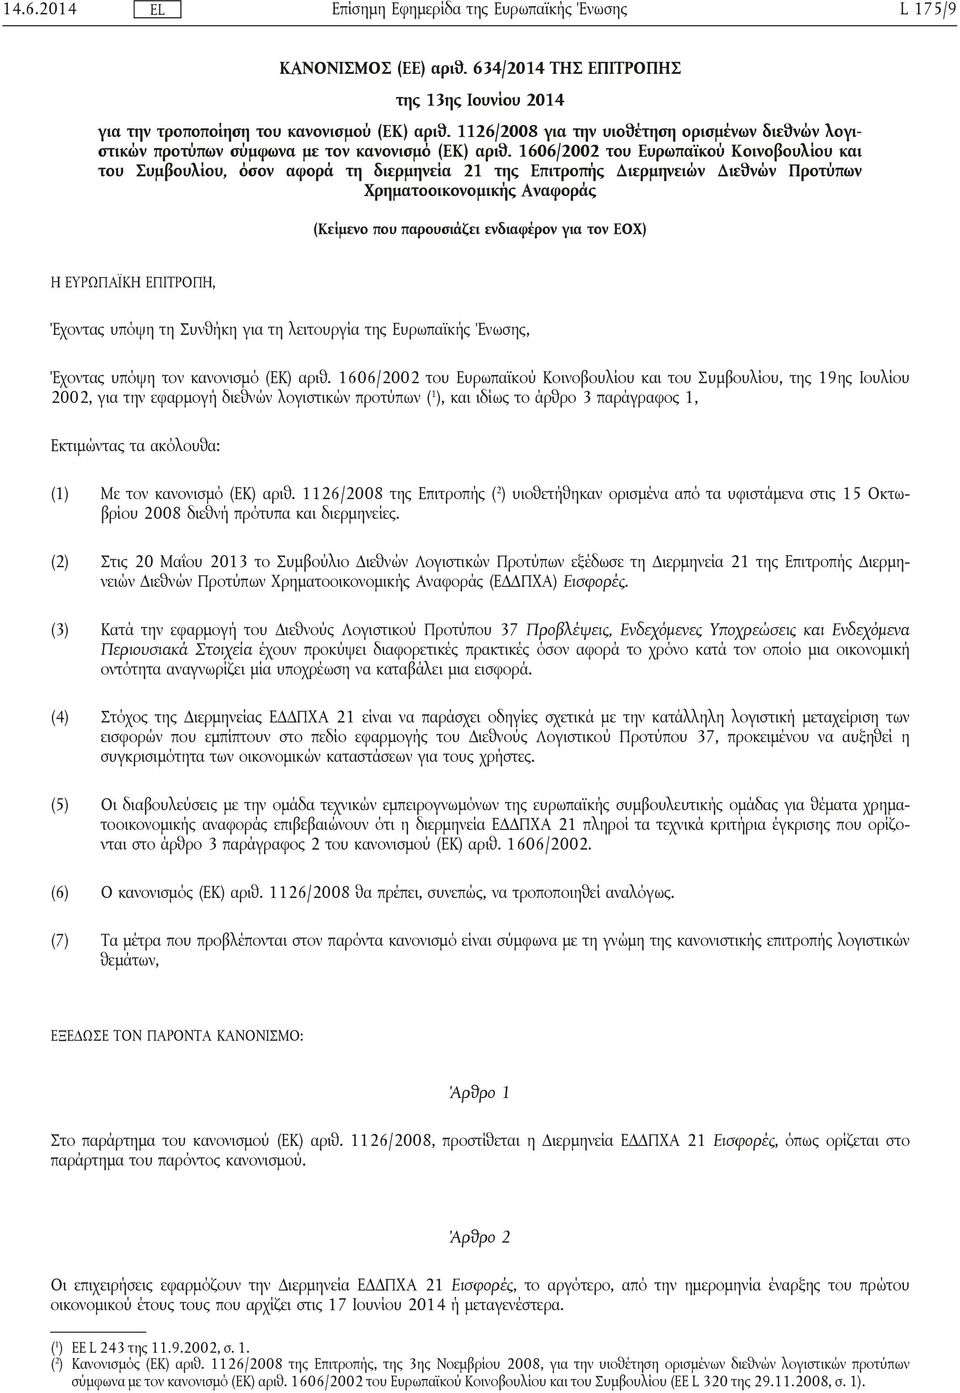 1606/2002 του Ευρωπαϊκού Κοινοβουλίου και του Συμβουλίου, όσον αφορά τη διερμηνεία 21 της Επιτροπής Διερμηνειών Διεθνών Προτύπων Χρηματοοικονομικής Αναφοράς (Κείμενο που παρουσιάζει ενδιαφέρον για